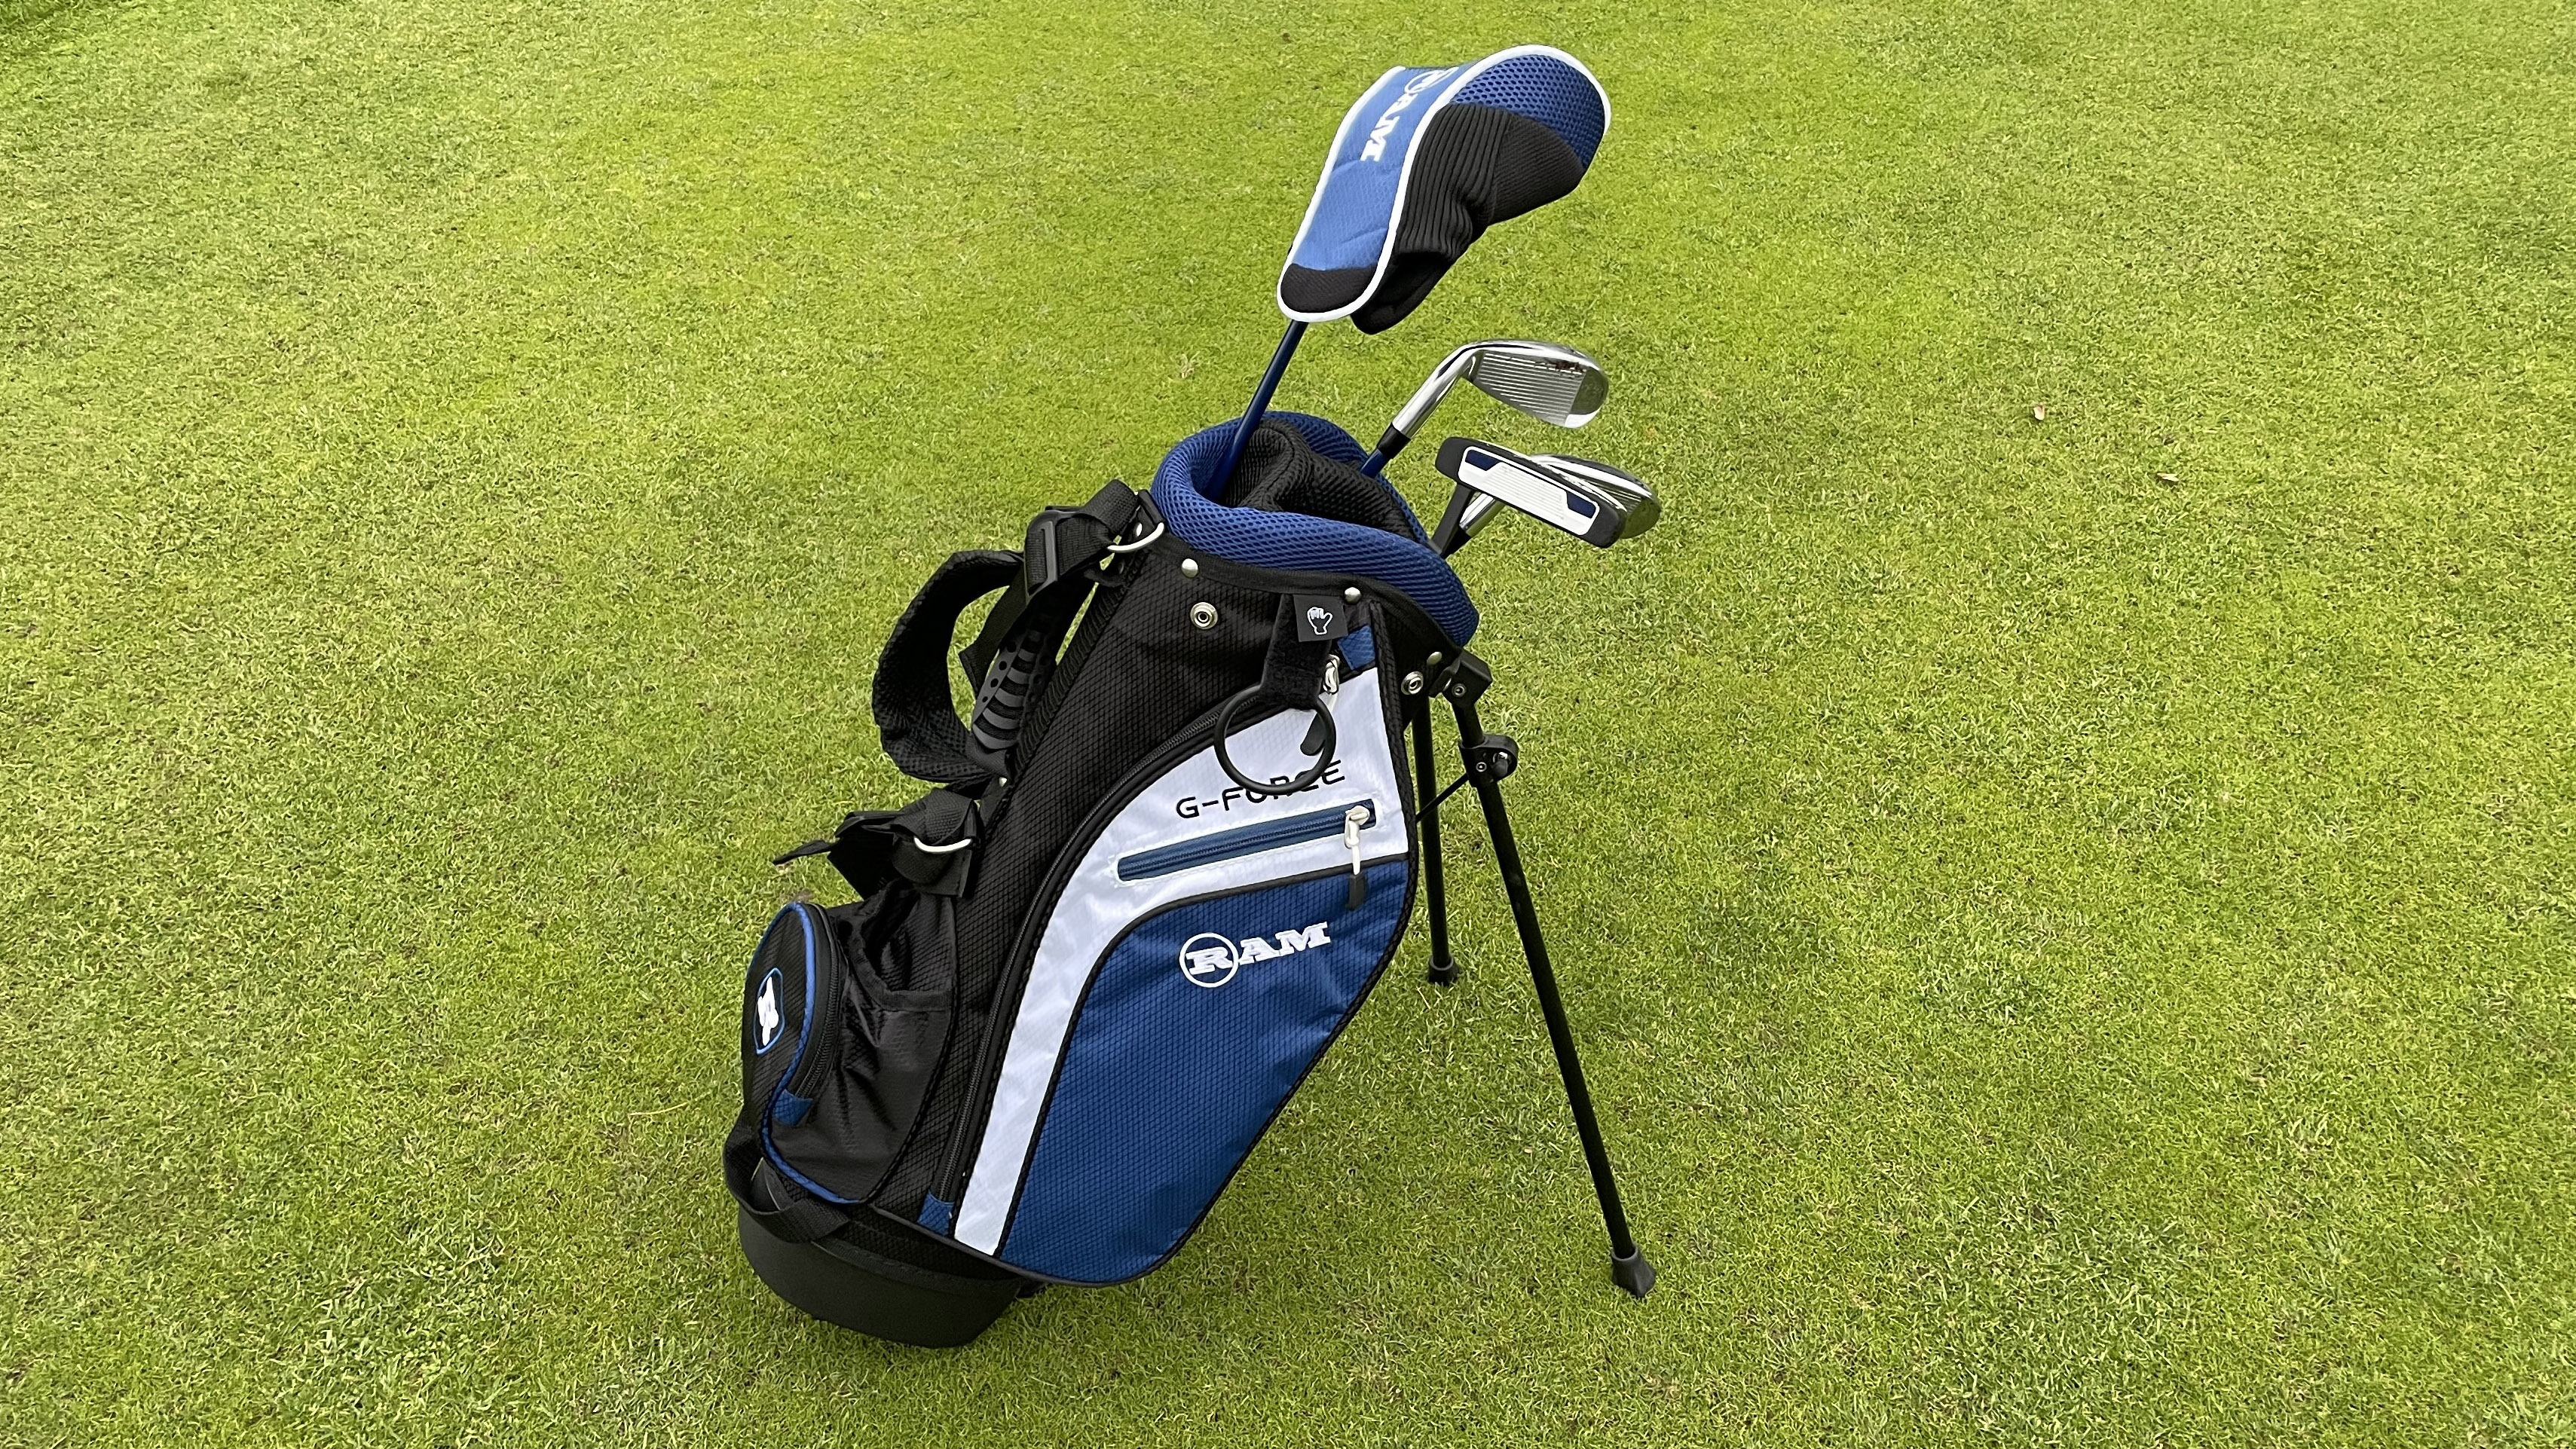 Ram Junior G-Force Golf Club Set 4-6 Year